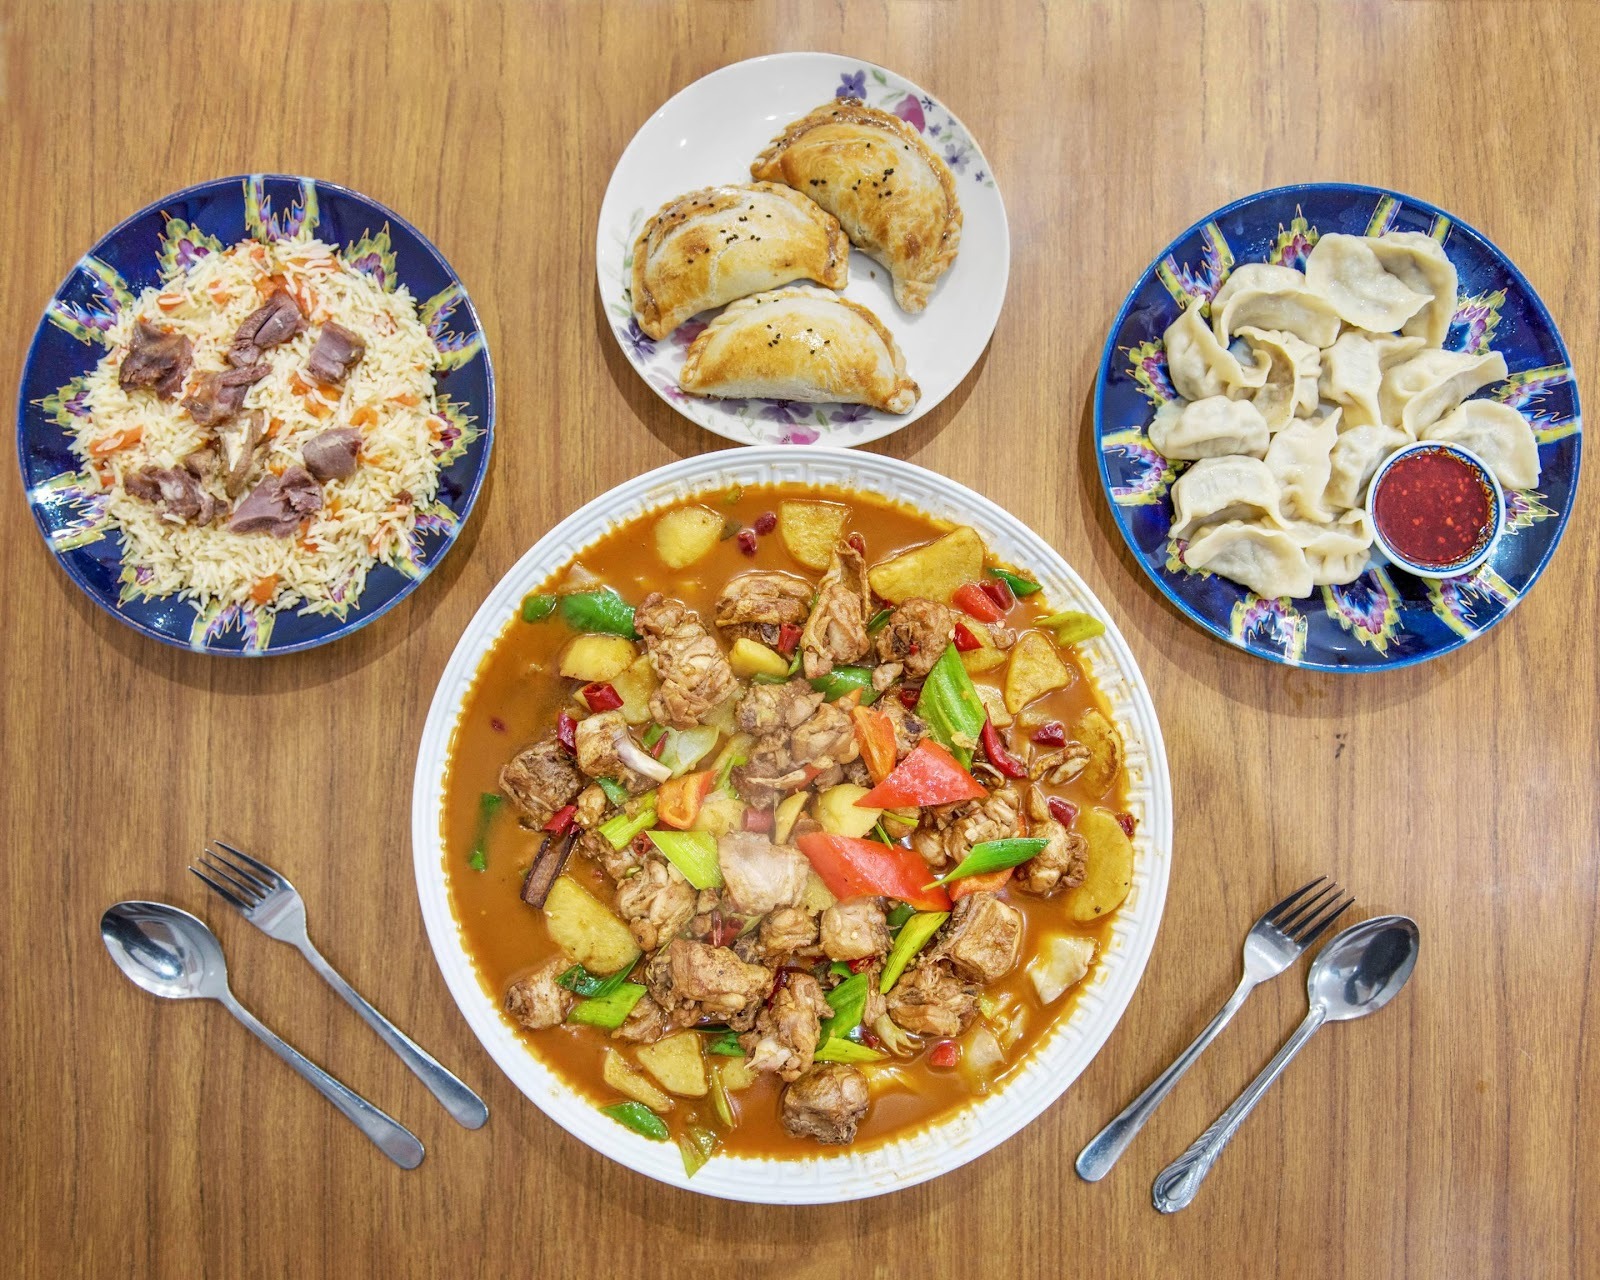 Order Etles Uyghur Restaurant Takeaway in London | Delivery Menu & Prices |  Uber Eats